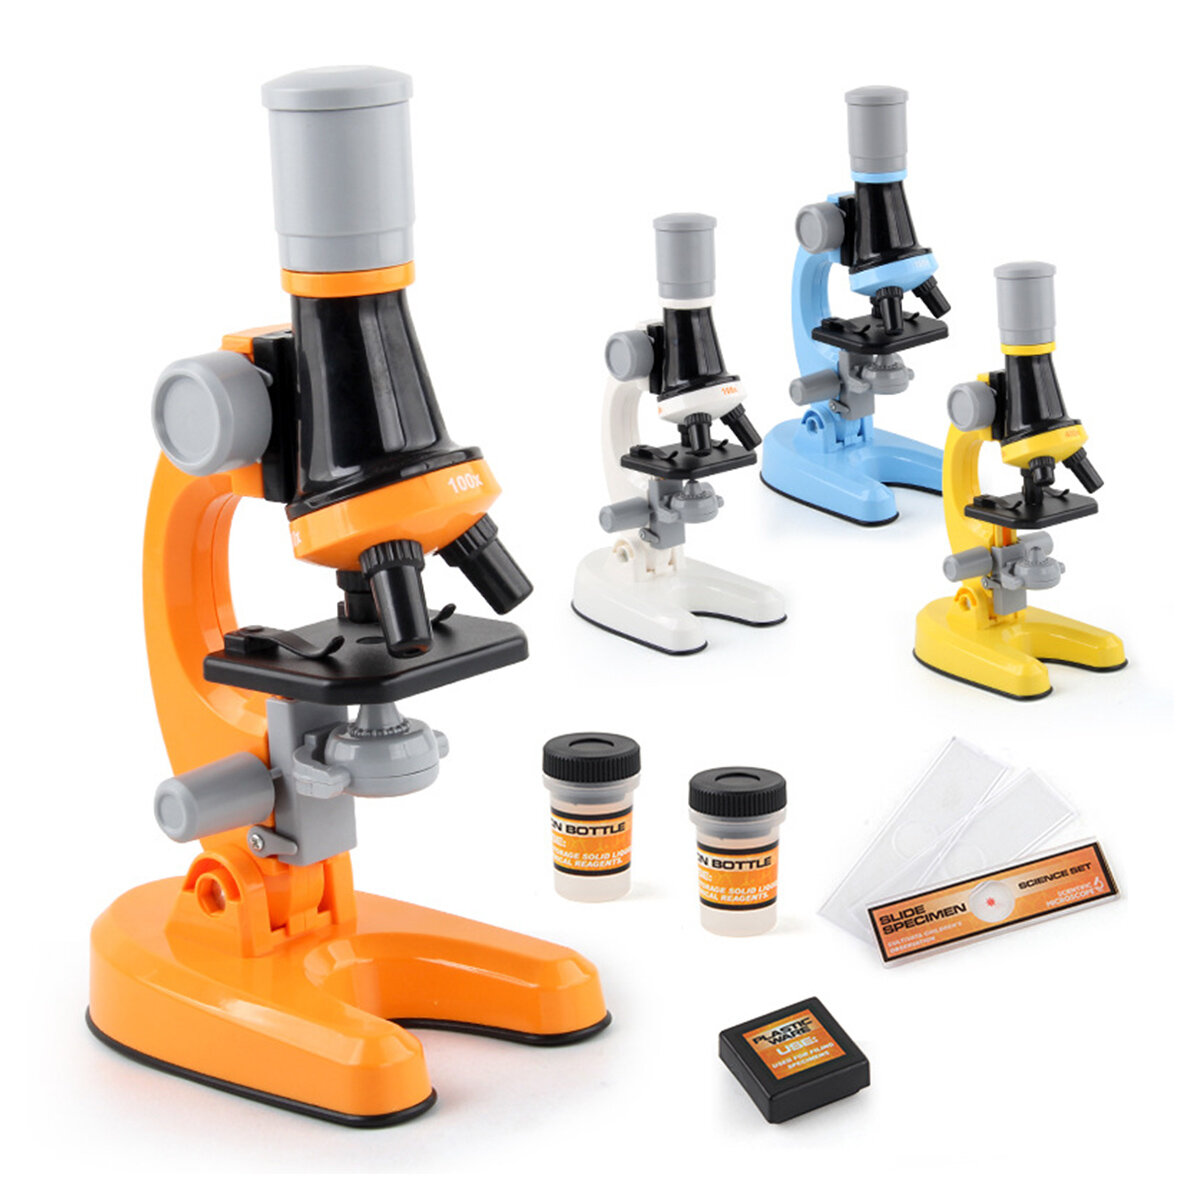 

100X / 400X / 1200X Детский биологический микроскоп элементарный Школа Научно-образовательная игрушка Инструмент